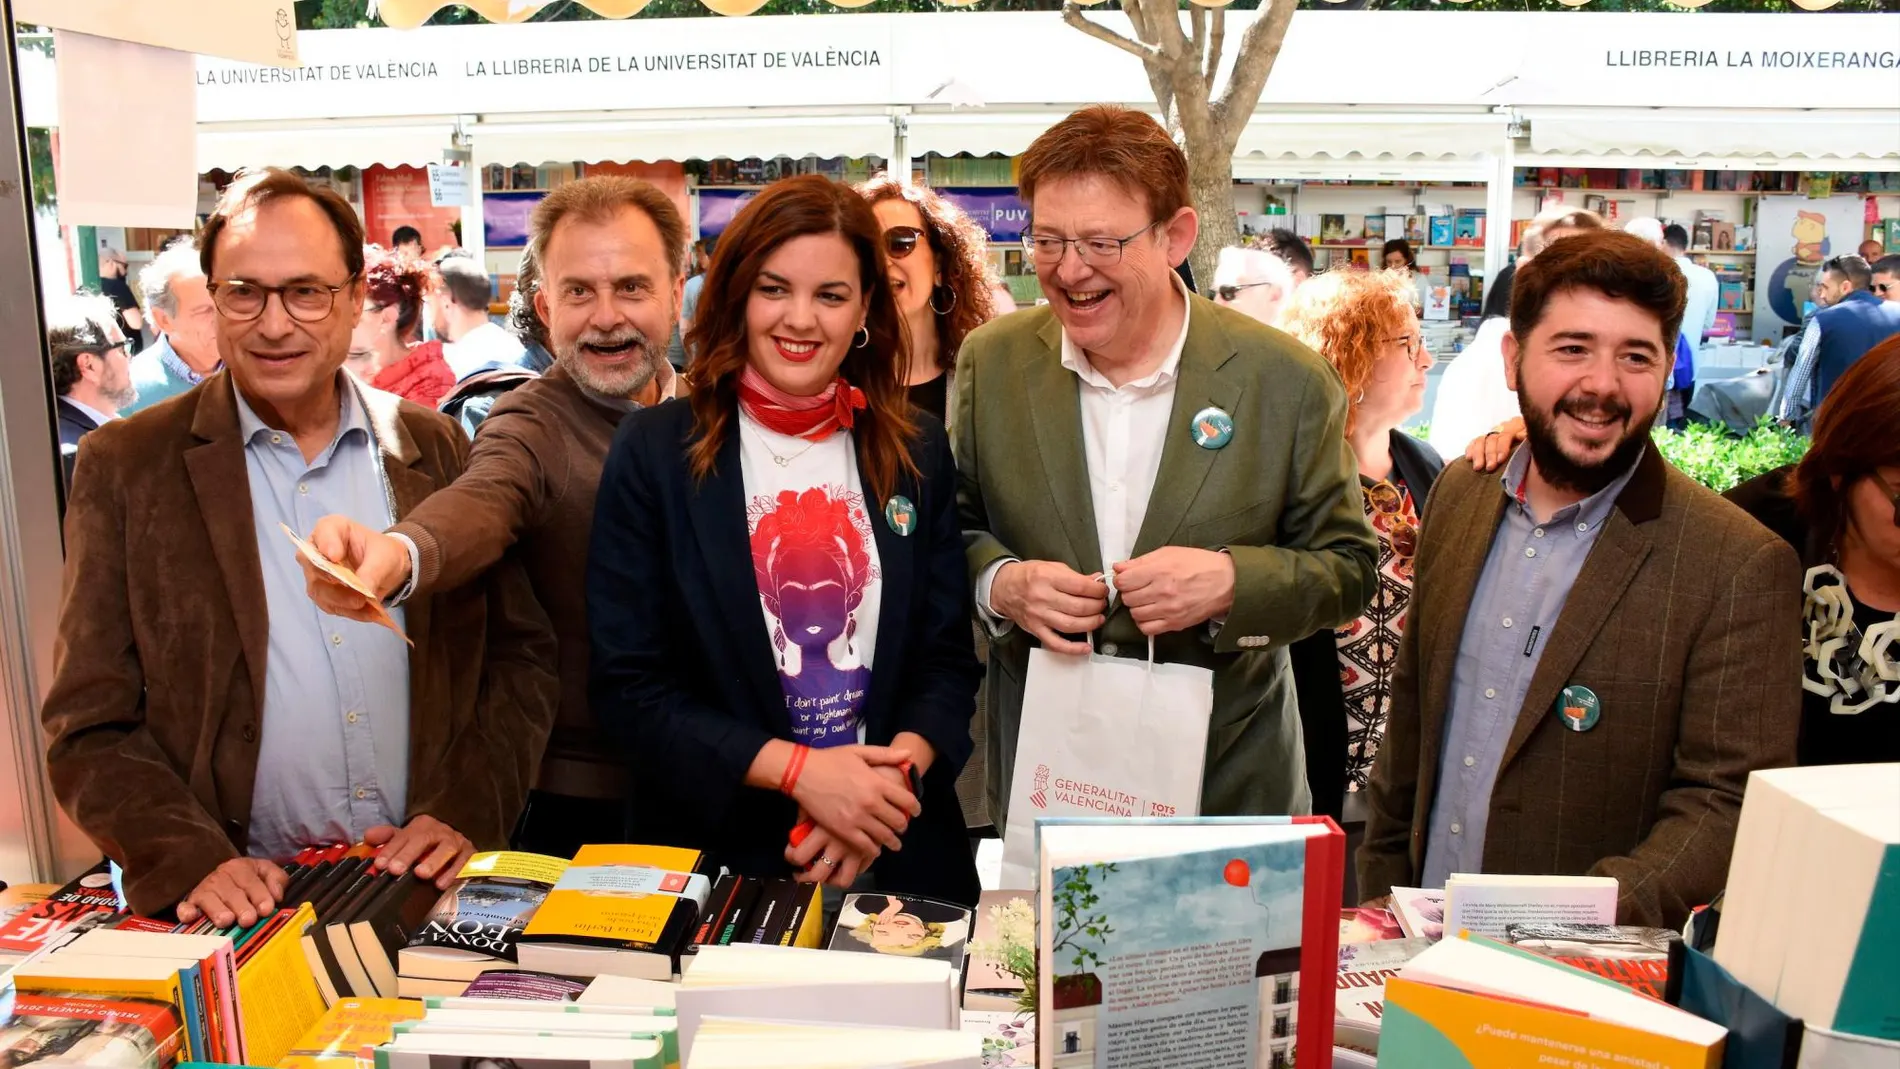 El presidente de la Generalitat y candidato socialista a la reelección aprovechó la primaveral mañana para visitar la Feria del Libro, mientras que Bonig pasó la jornada de reflexión en la Vall d'Uixò con su familia